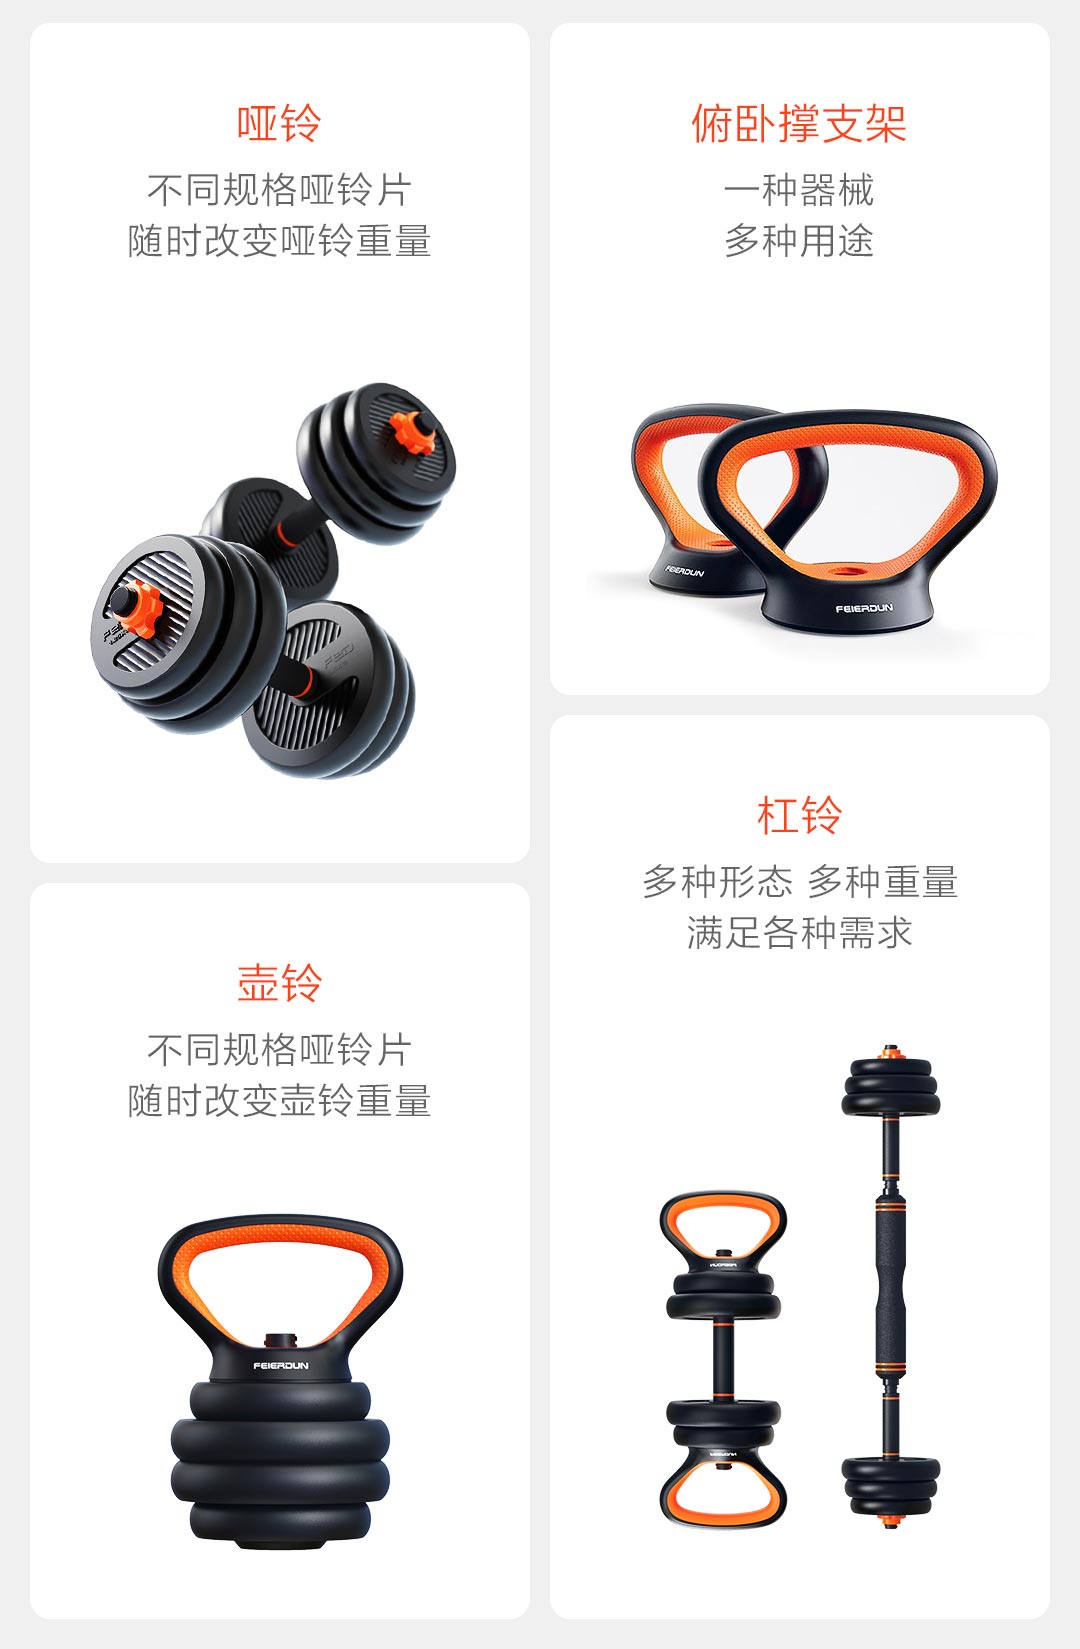 У Xiaomi в продаже появились ещё и гантели